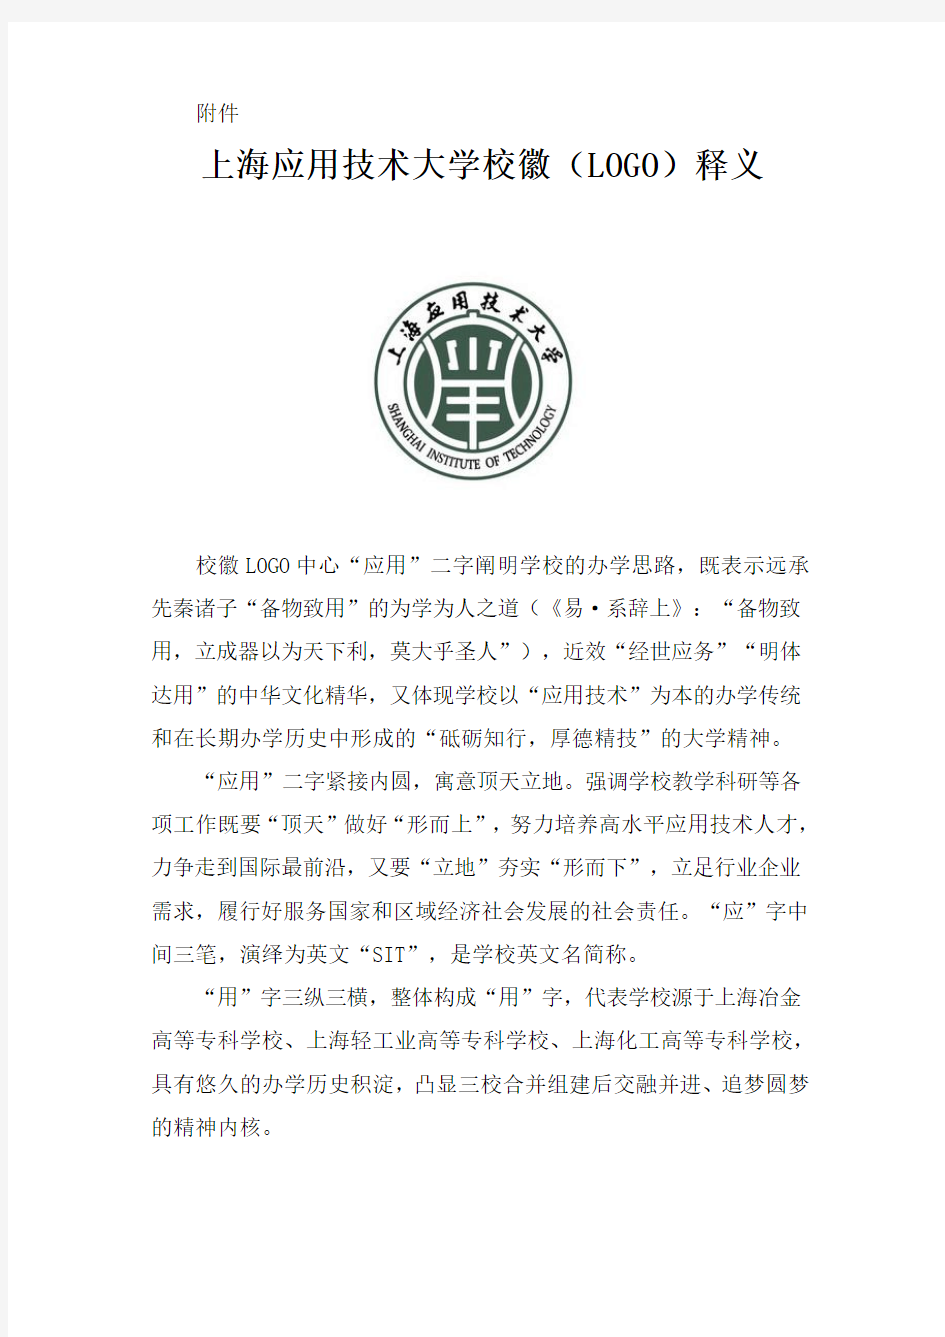 上海应用技术大学校徽(LOGO)释义